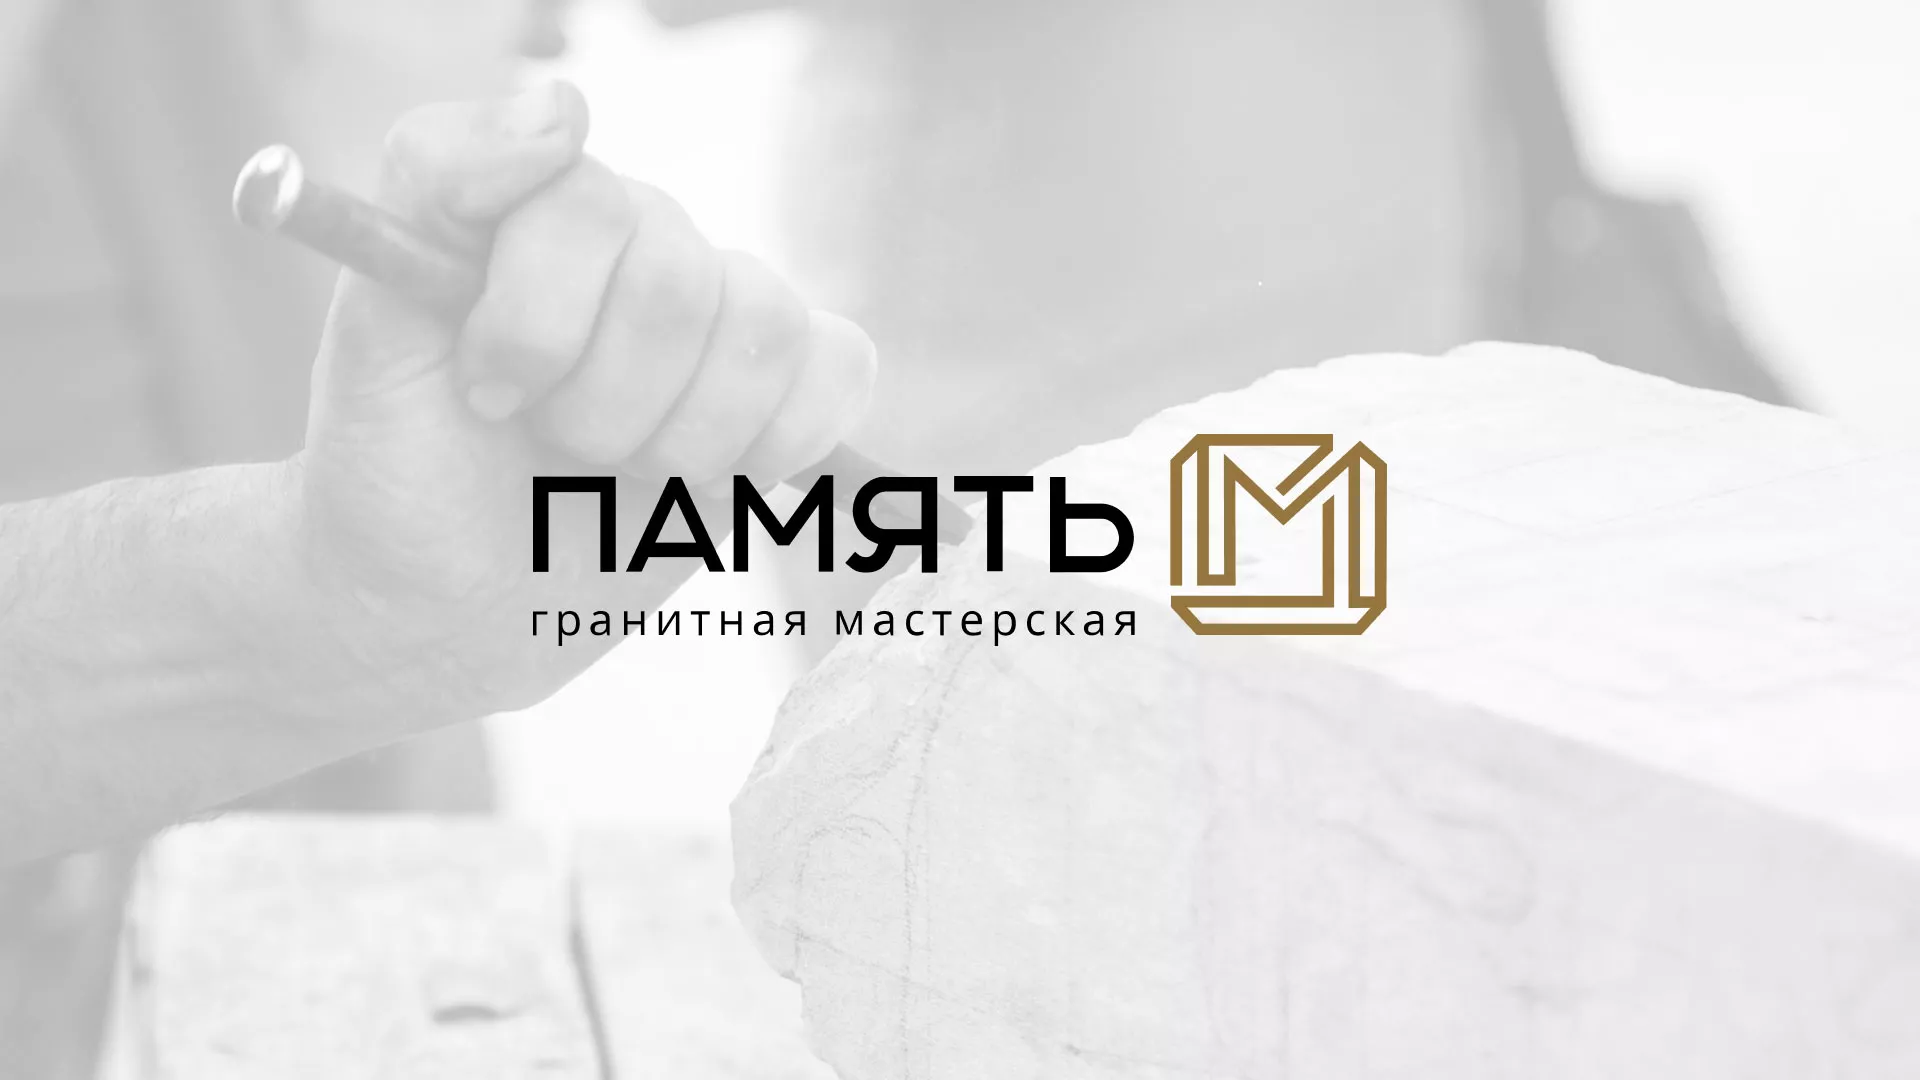 Разработка логотипа и сайта компании «Память-М» в Майском